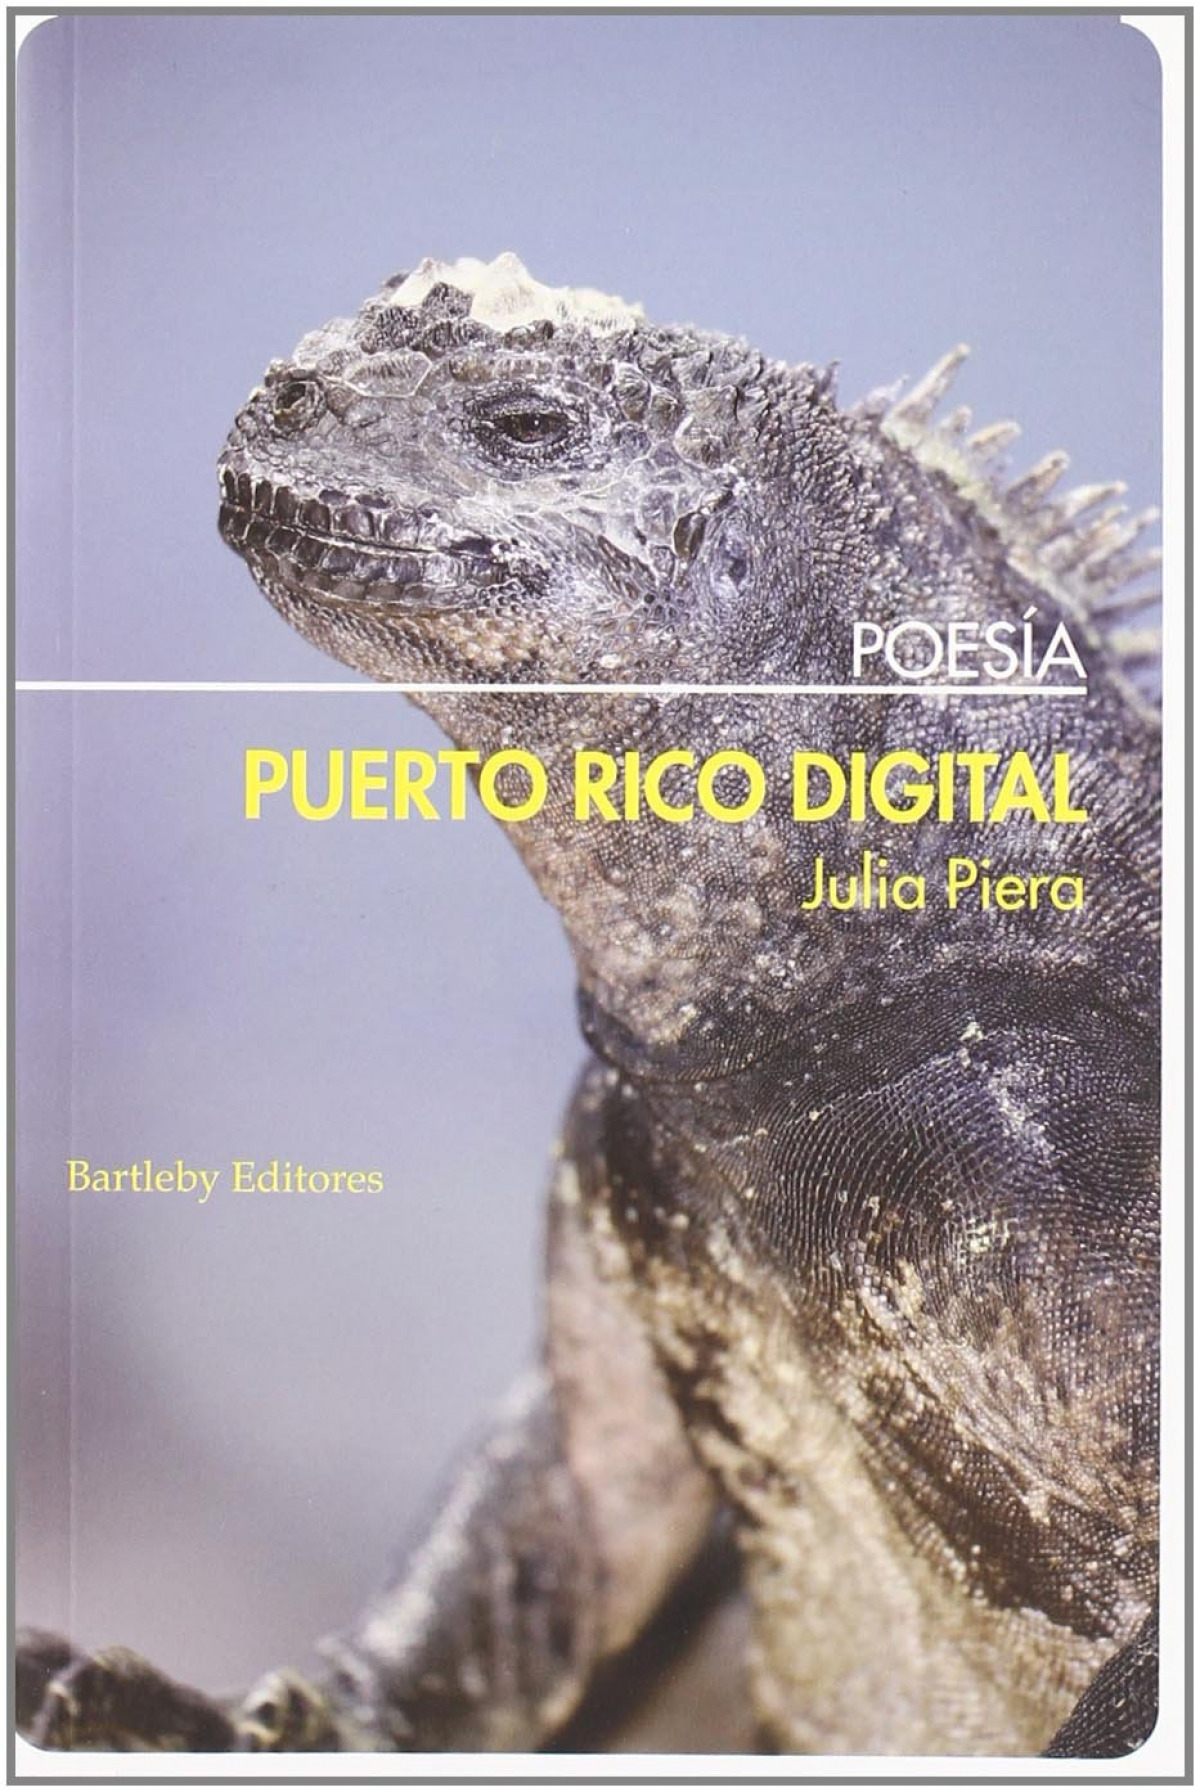 Puerto rico digital - Piera Julia